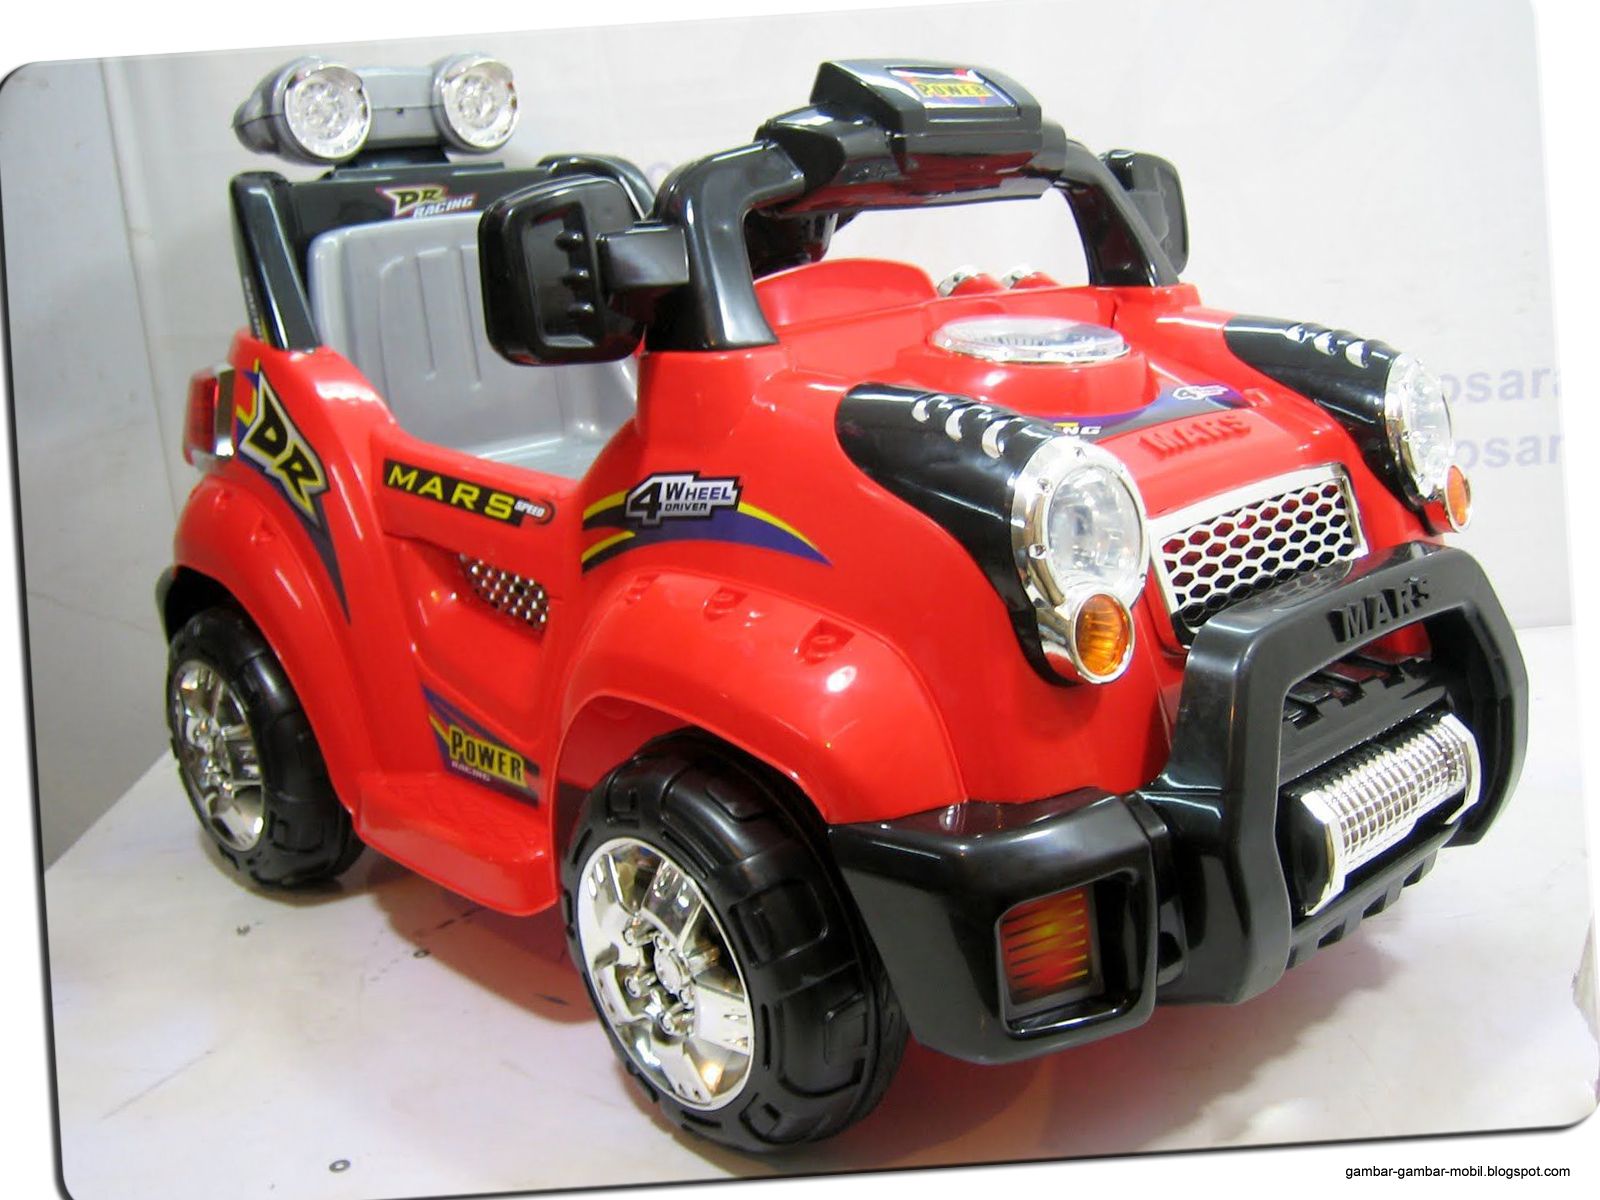  Mobil  Mainan  Anak Yang Bisa Dinaiki Gambar  Gambar  Mobil 